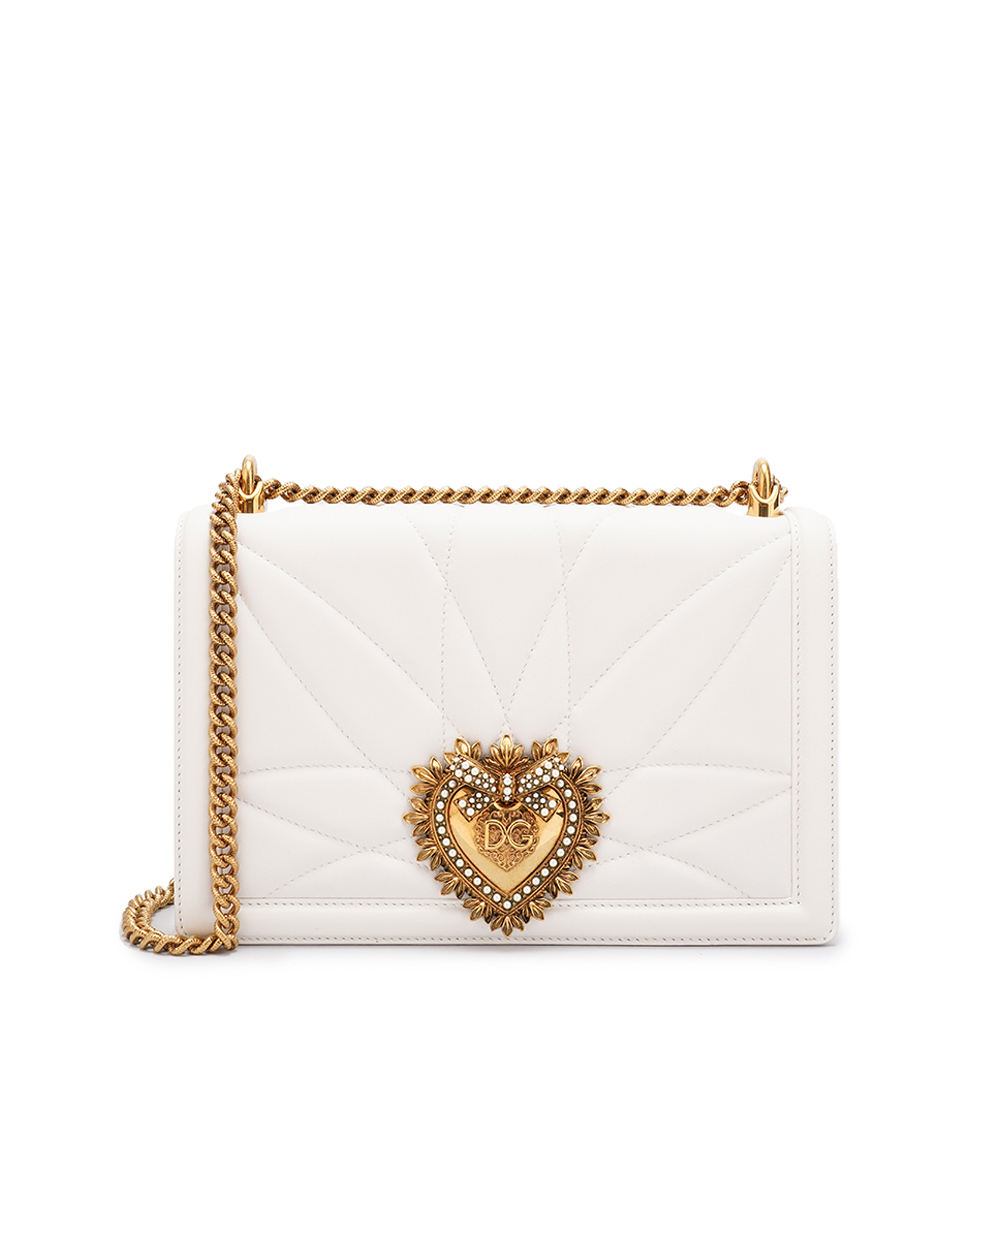 Кожаная сумка Devotion Large Dolce&Gabbana BB6651-AV967, белый цвет • Купить в интернет-магазине Kameron